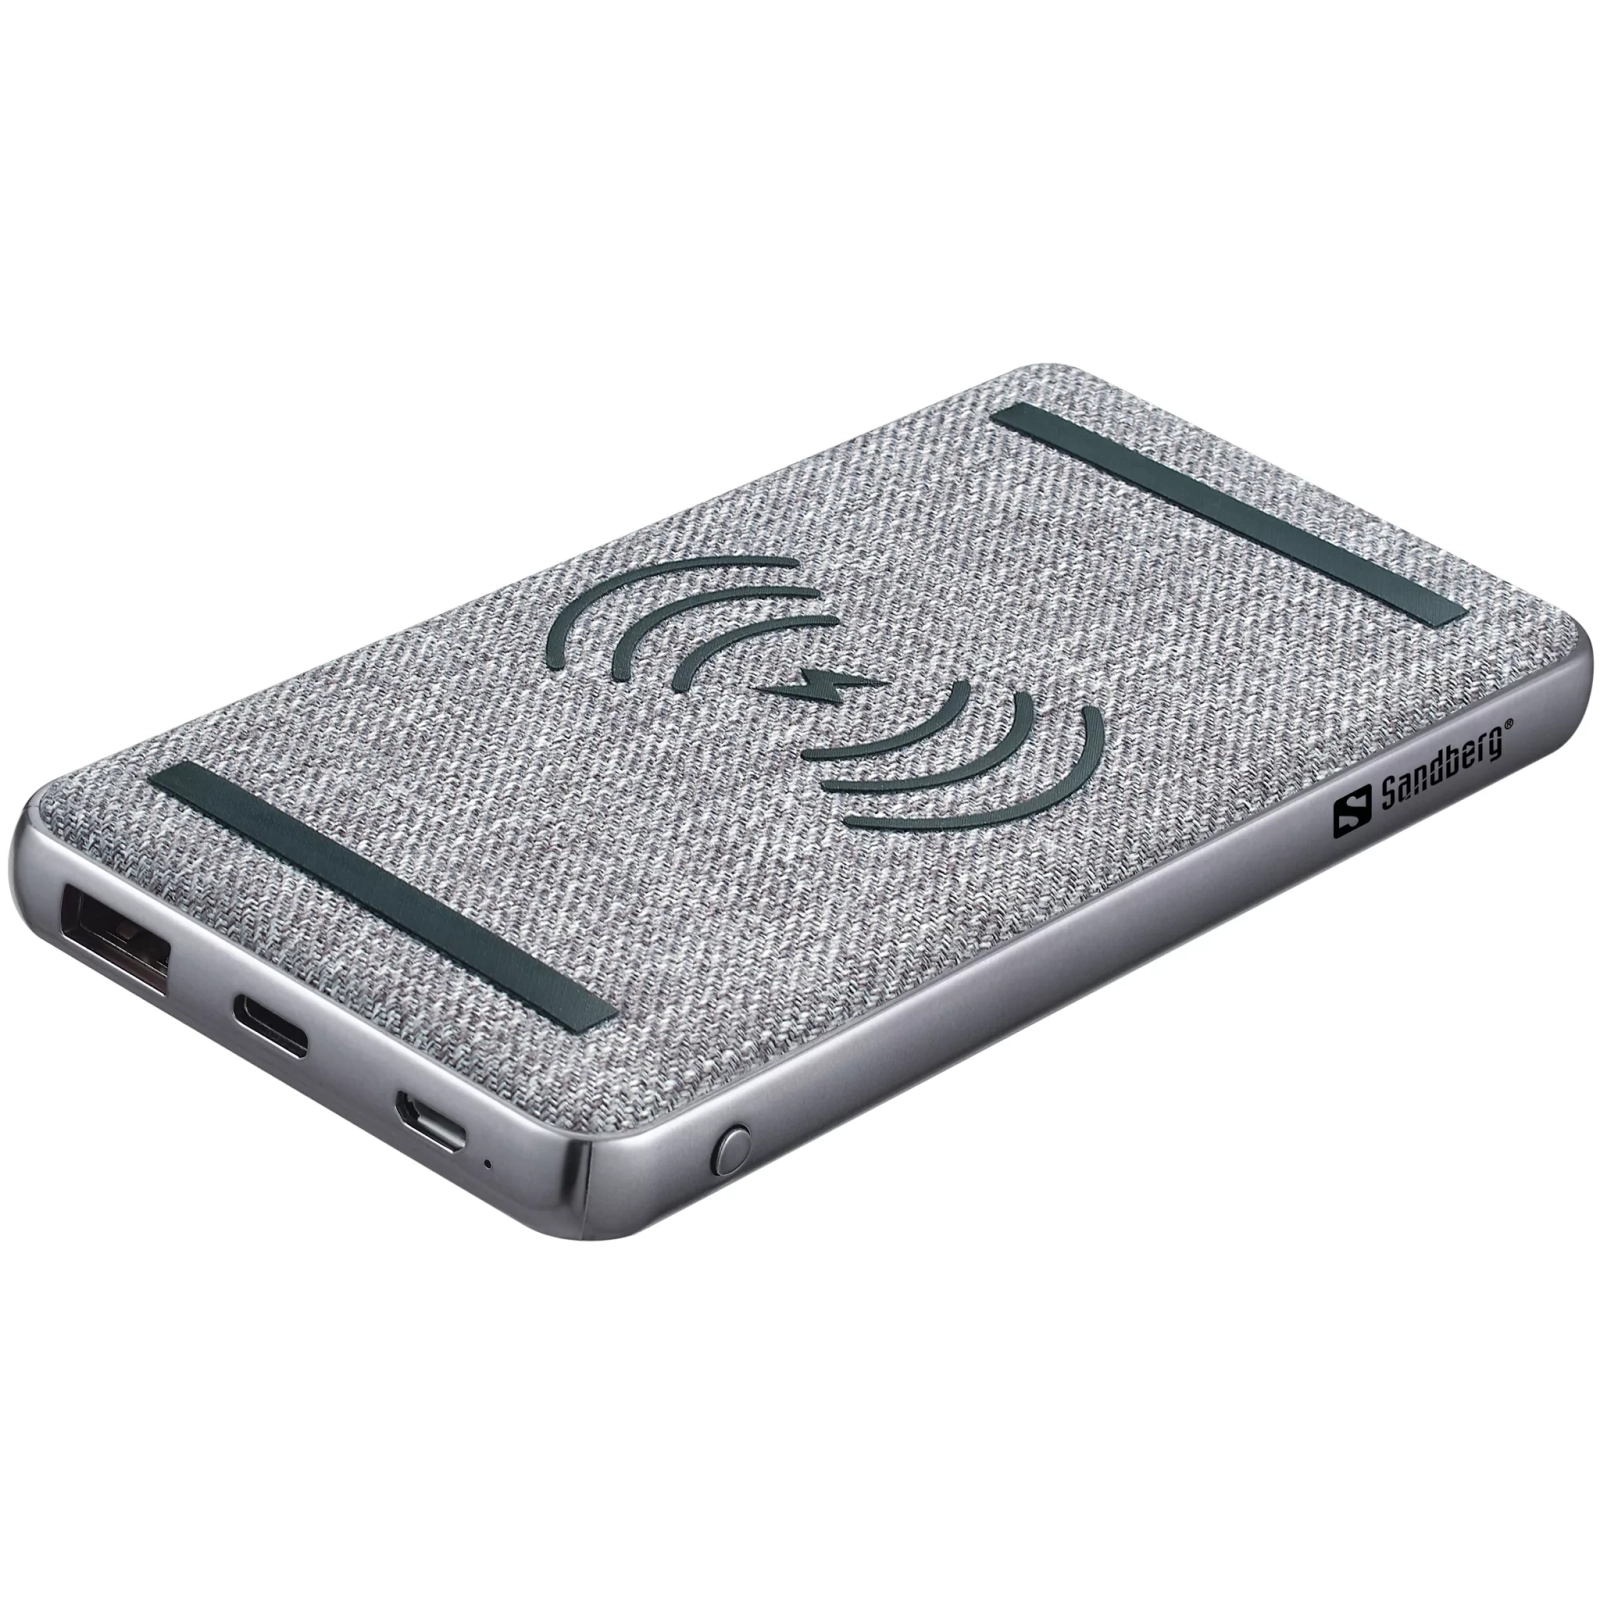 Батарея универсальная Sandberg 10000mAh, PD/20W,  Wireless QI 15W, QC3.0, USB-C, Micro-USB, USB-A (420-61)